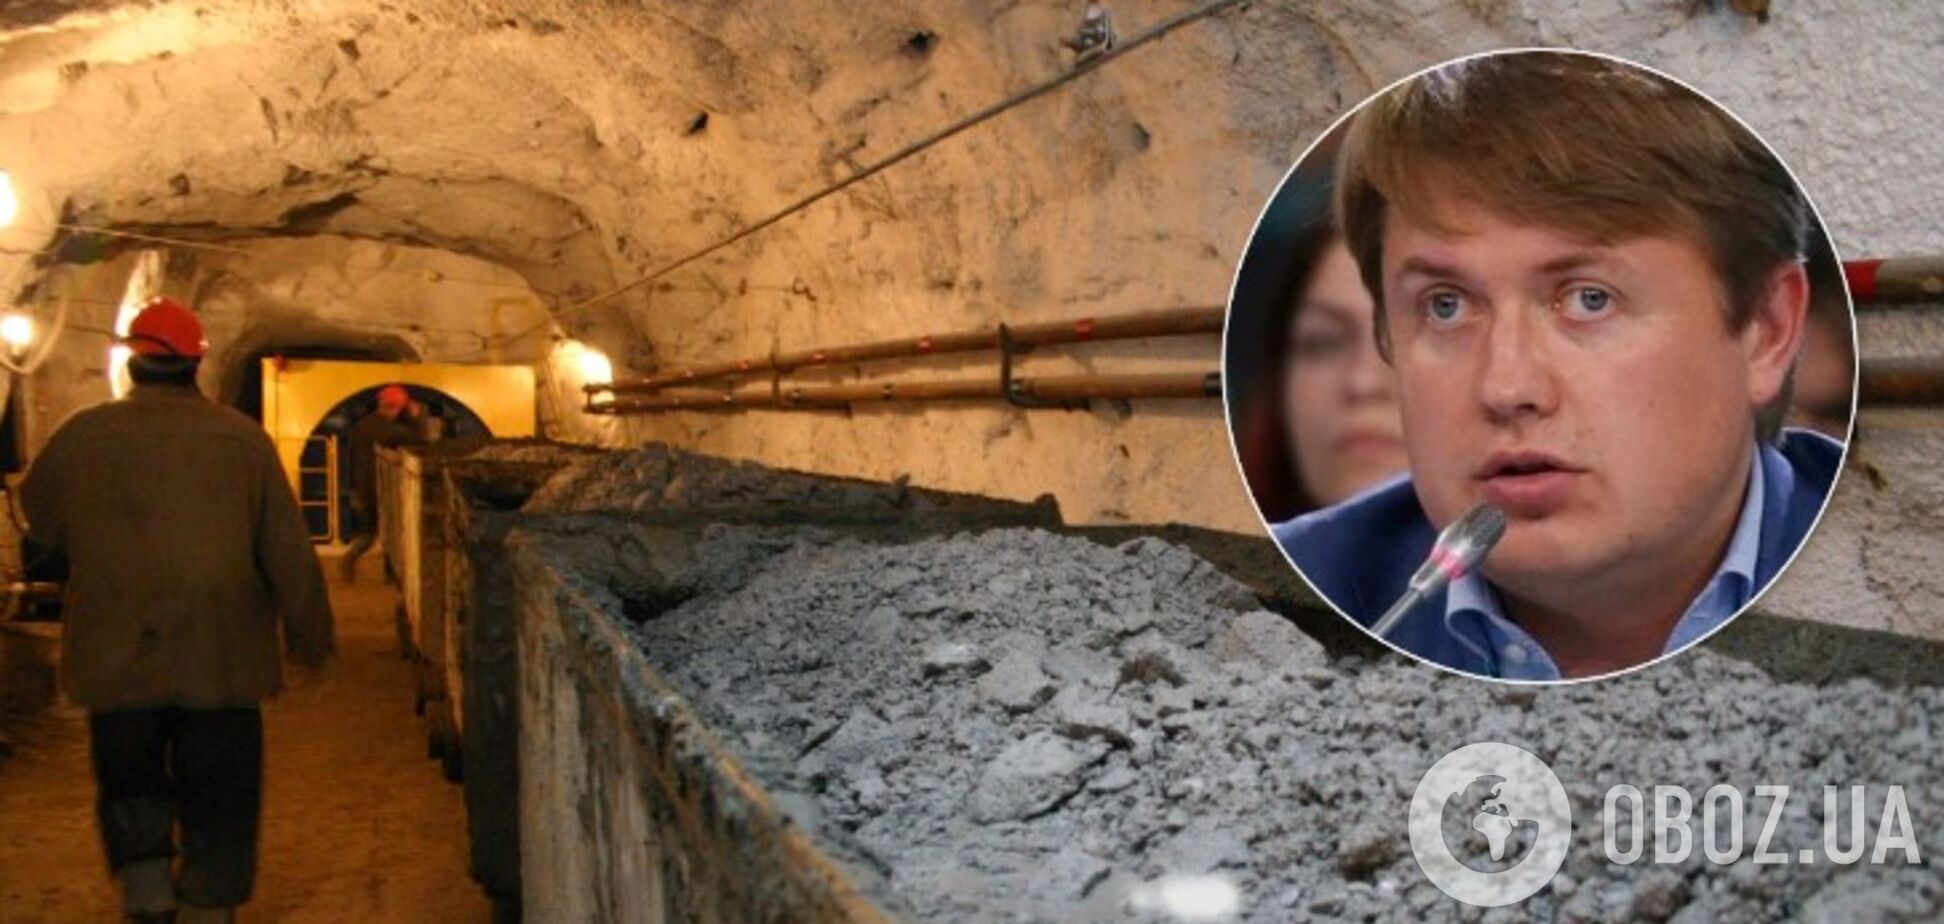 Герус возглавил процесс закрытия шахт, но хочет избежать ответственности, – нардеп